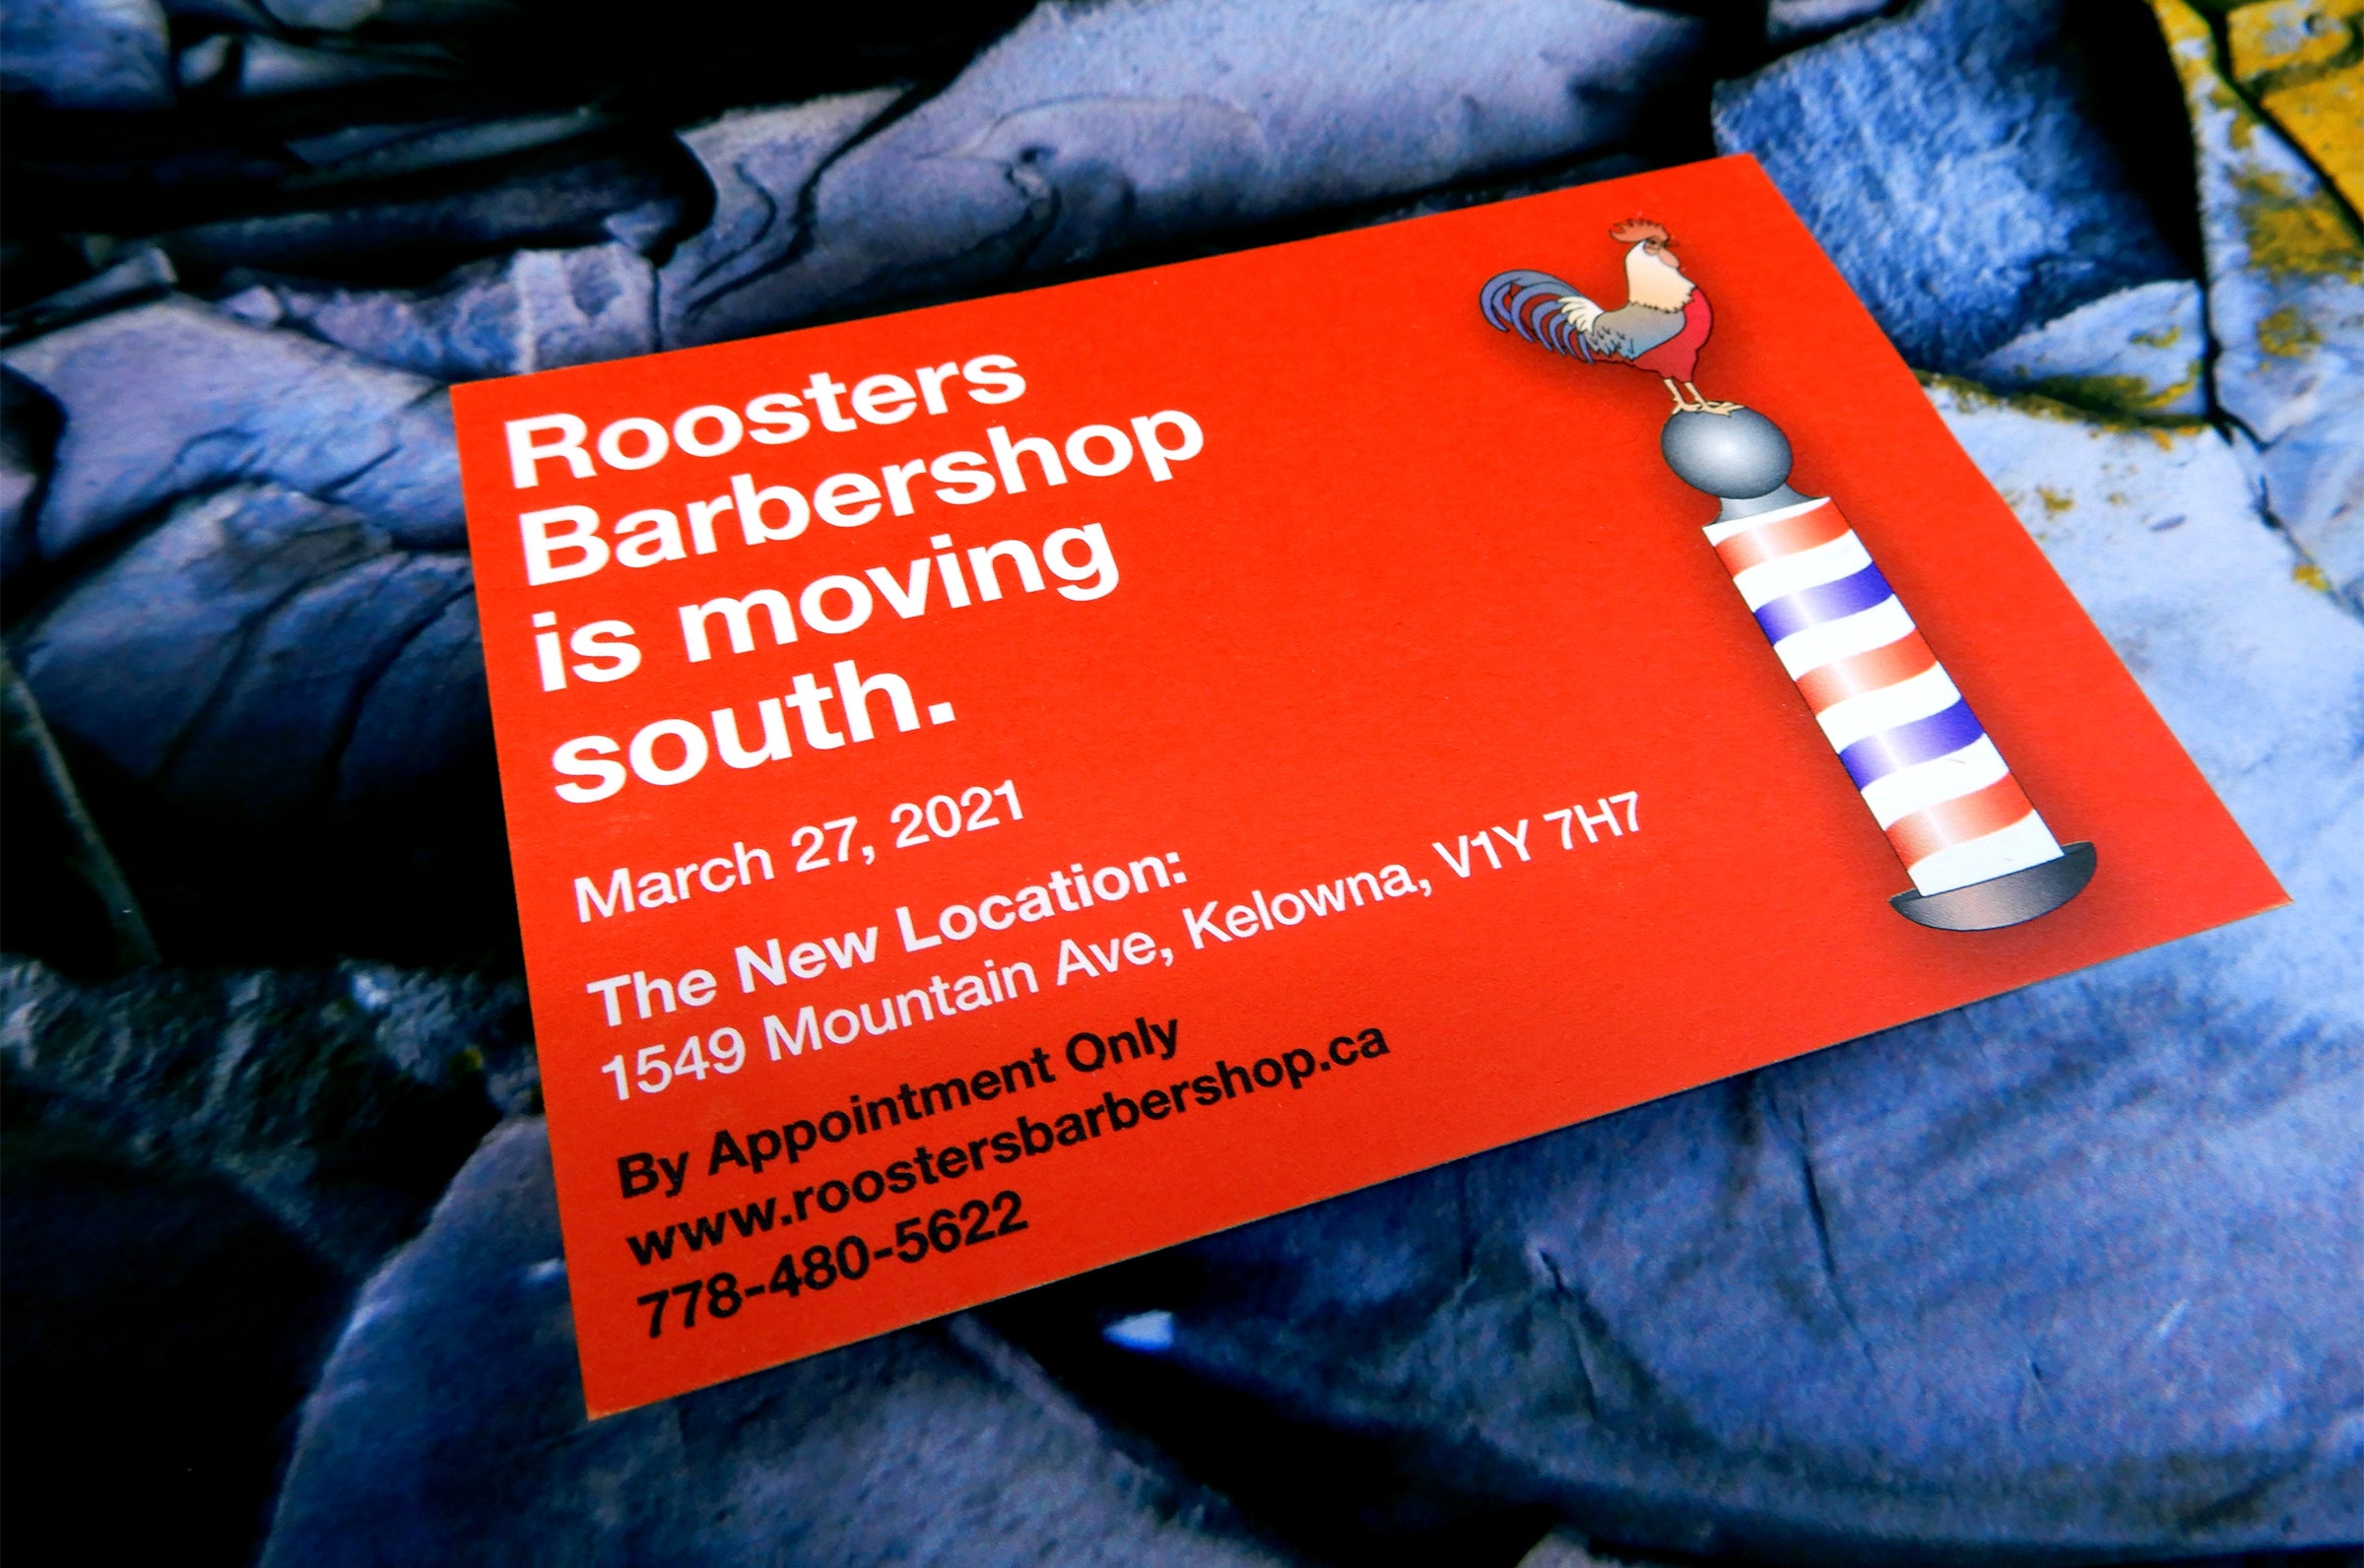 Roosters Barbershop Postcard printed on 18pt Hemp card stock at Clubcard Printing